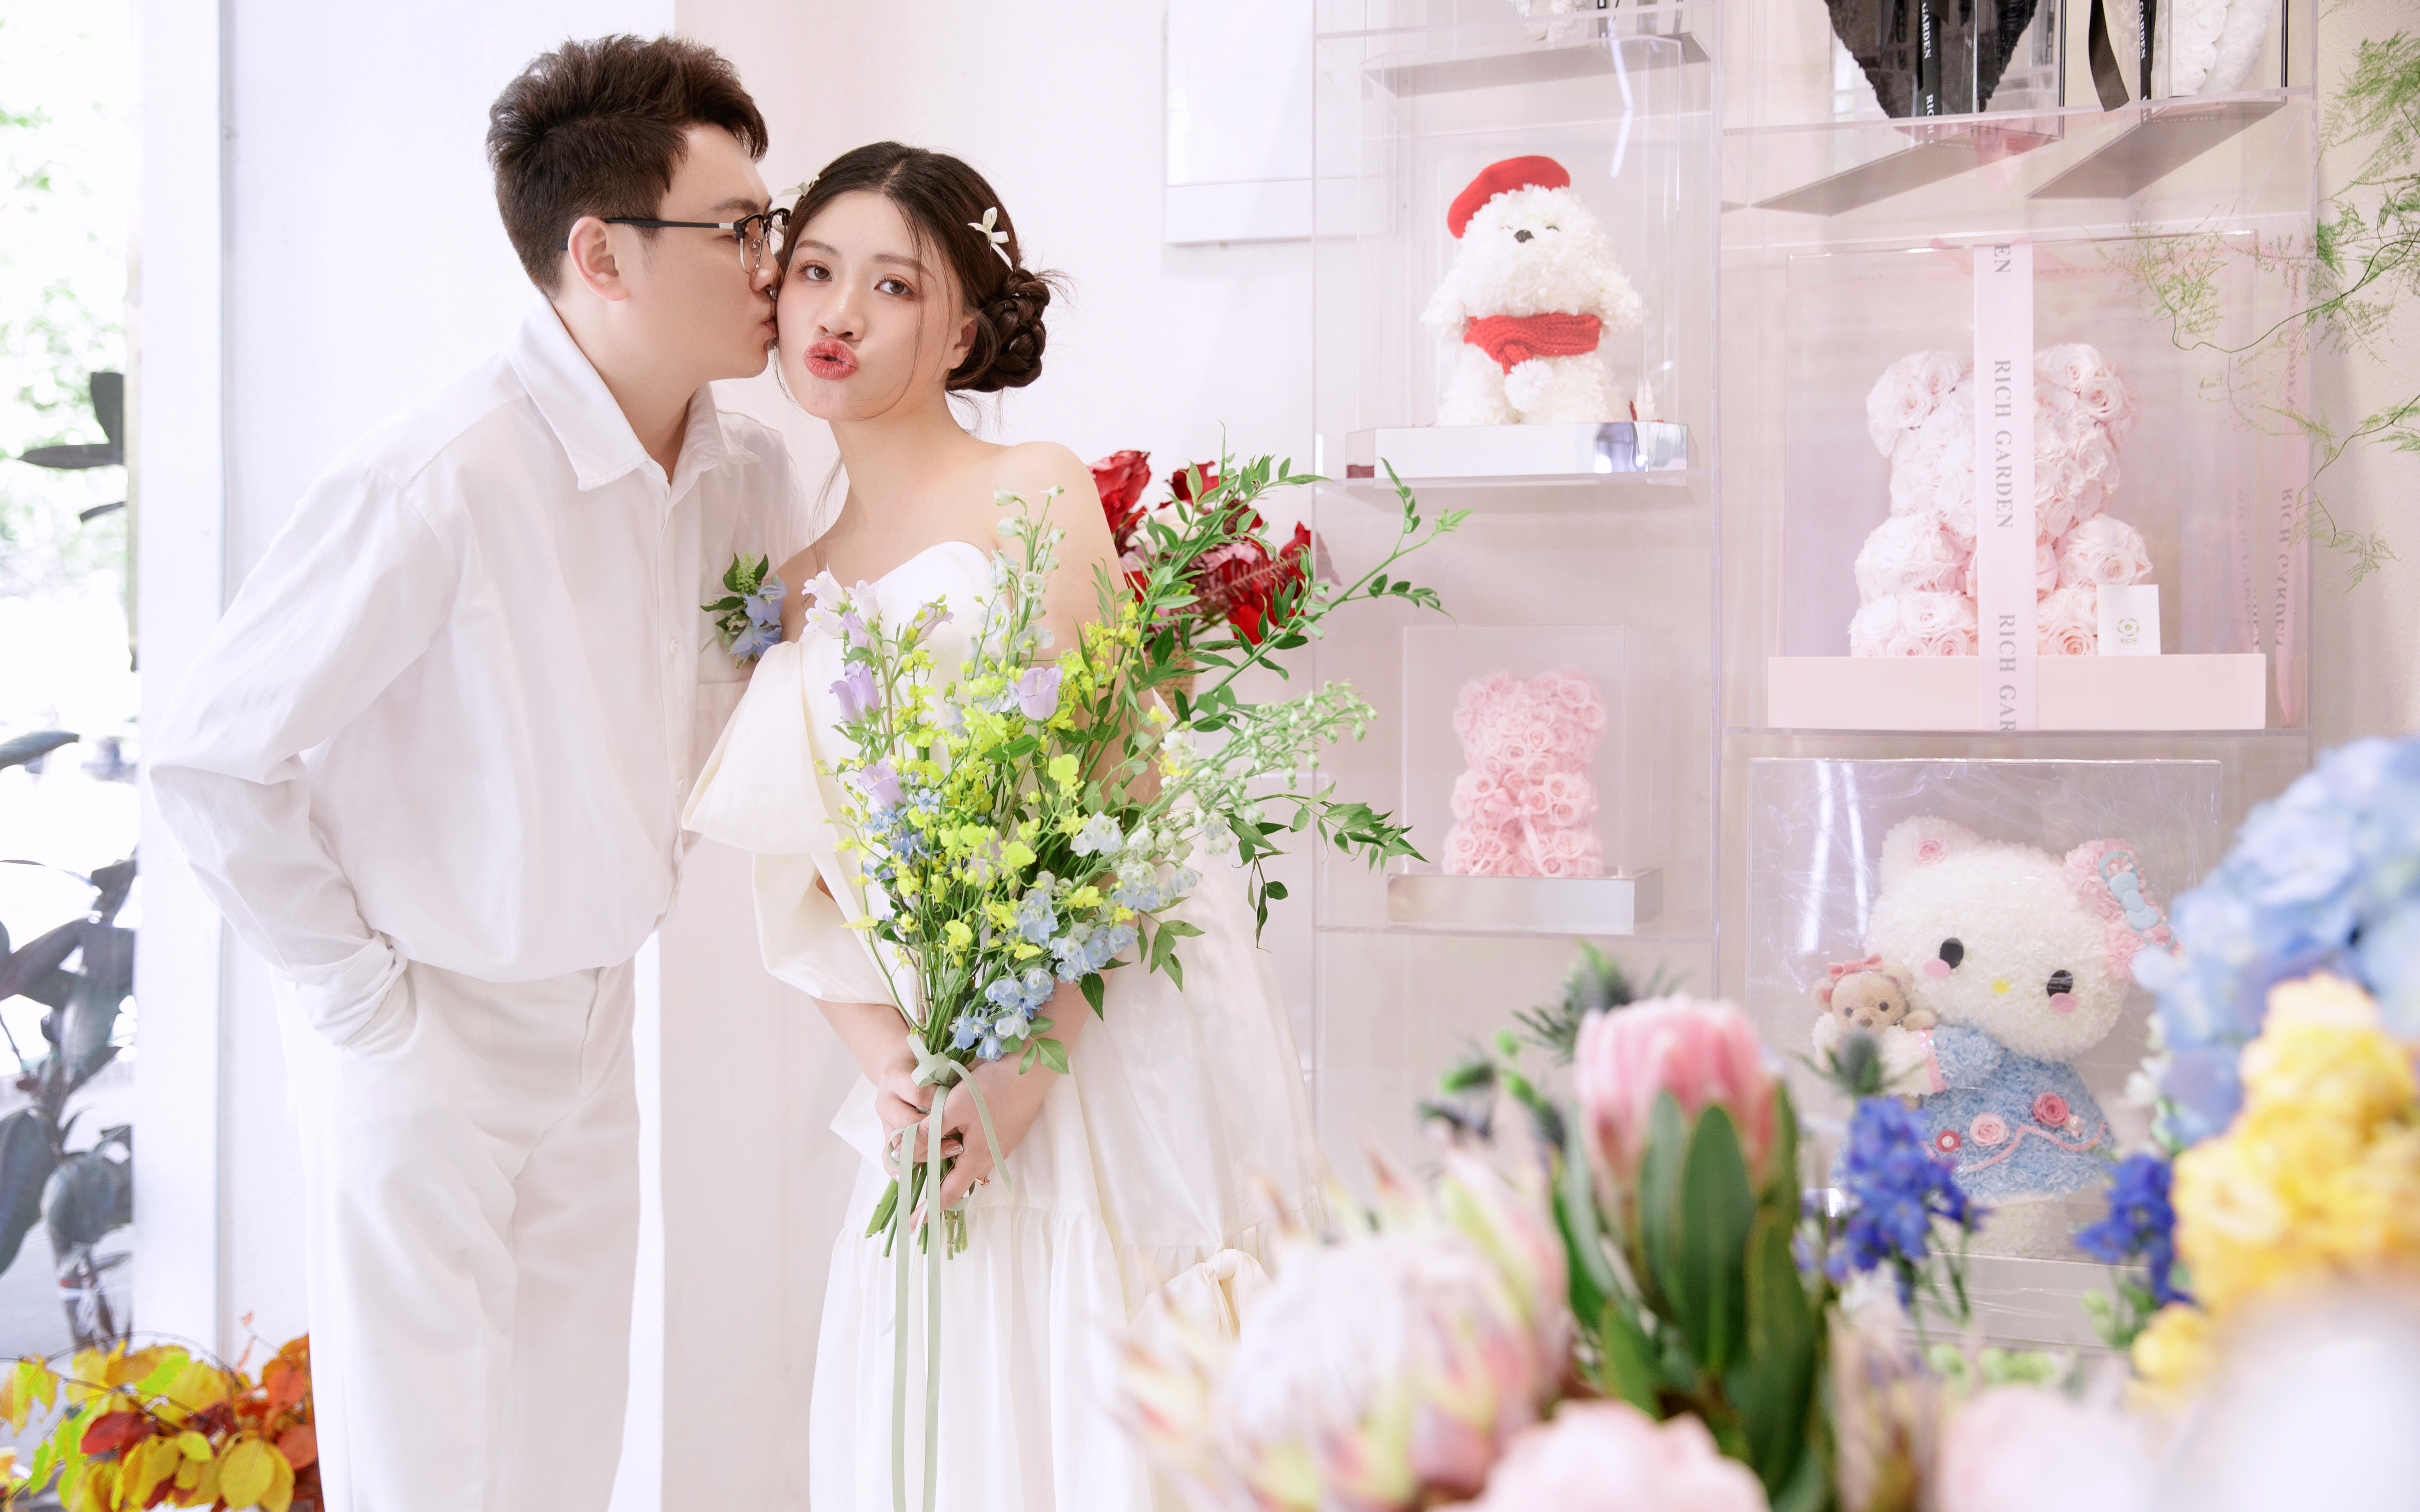 【王开摄影】今年必拍的花房婚纱照妥妥的少女感拉满